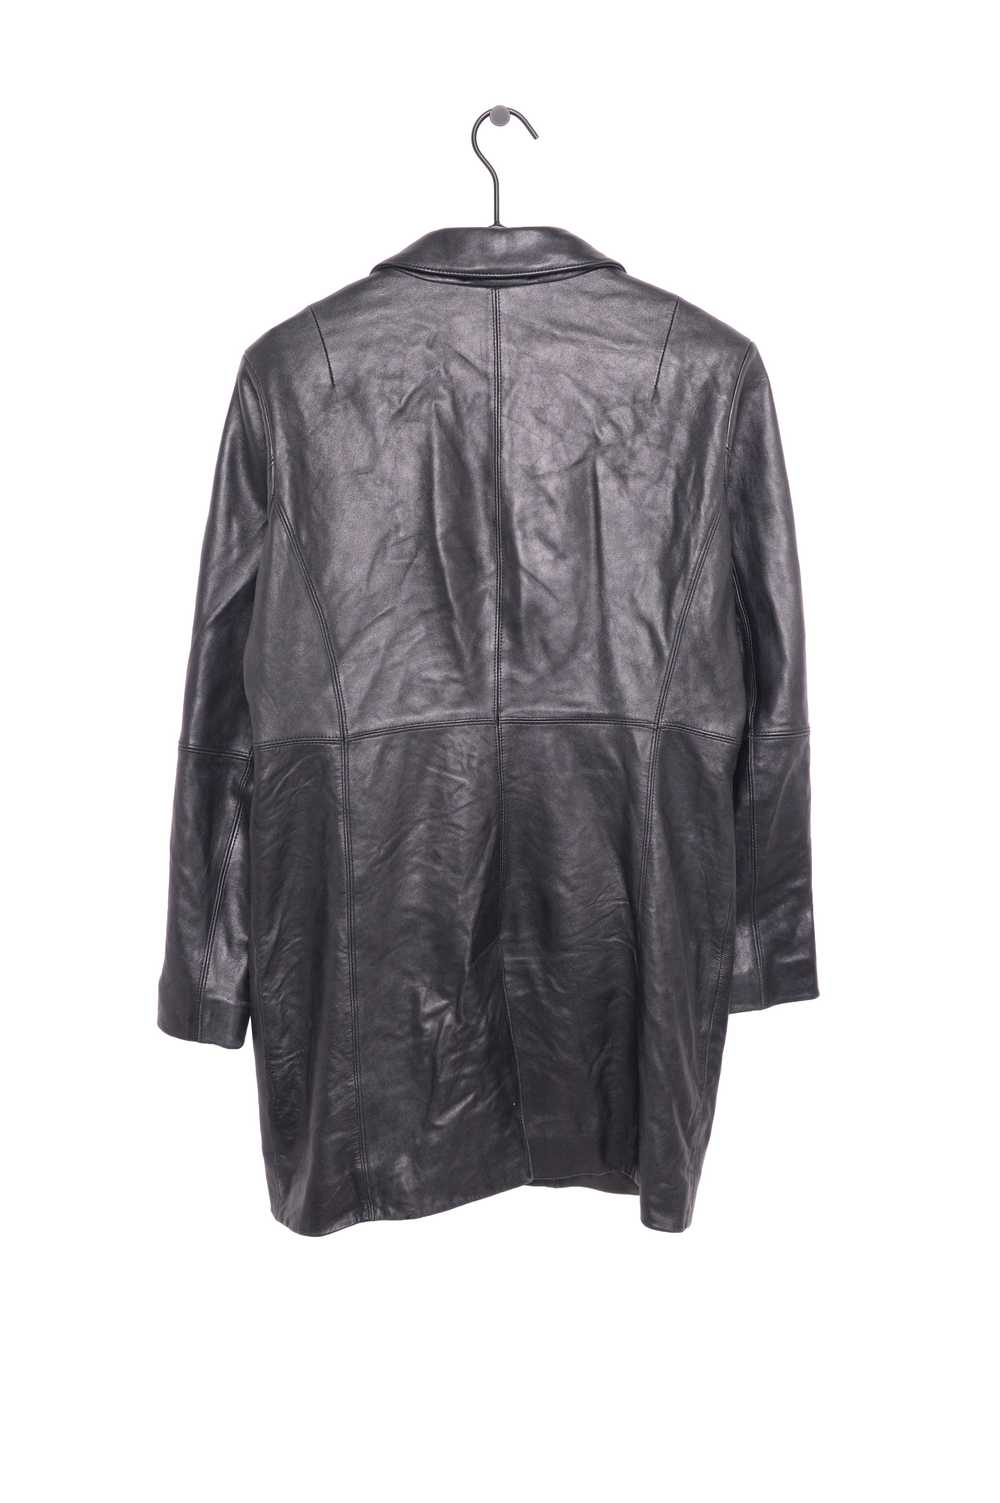 1990s Soft Long Leather Jacket - image 2